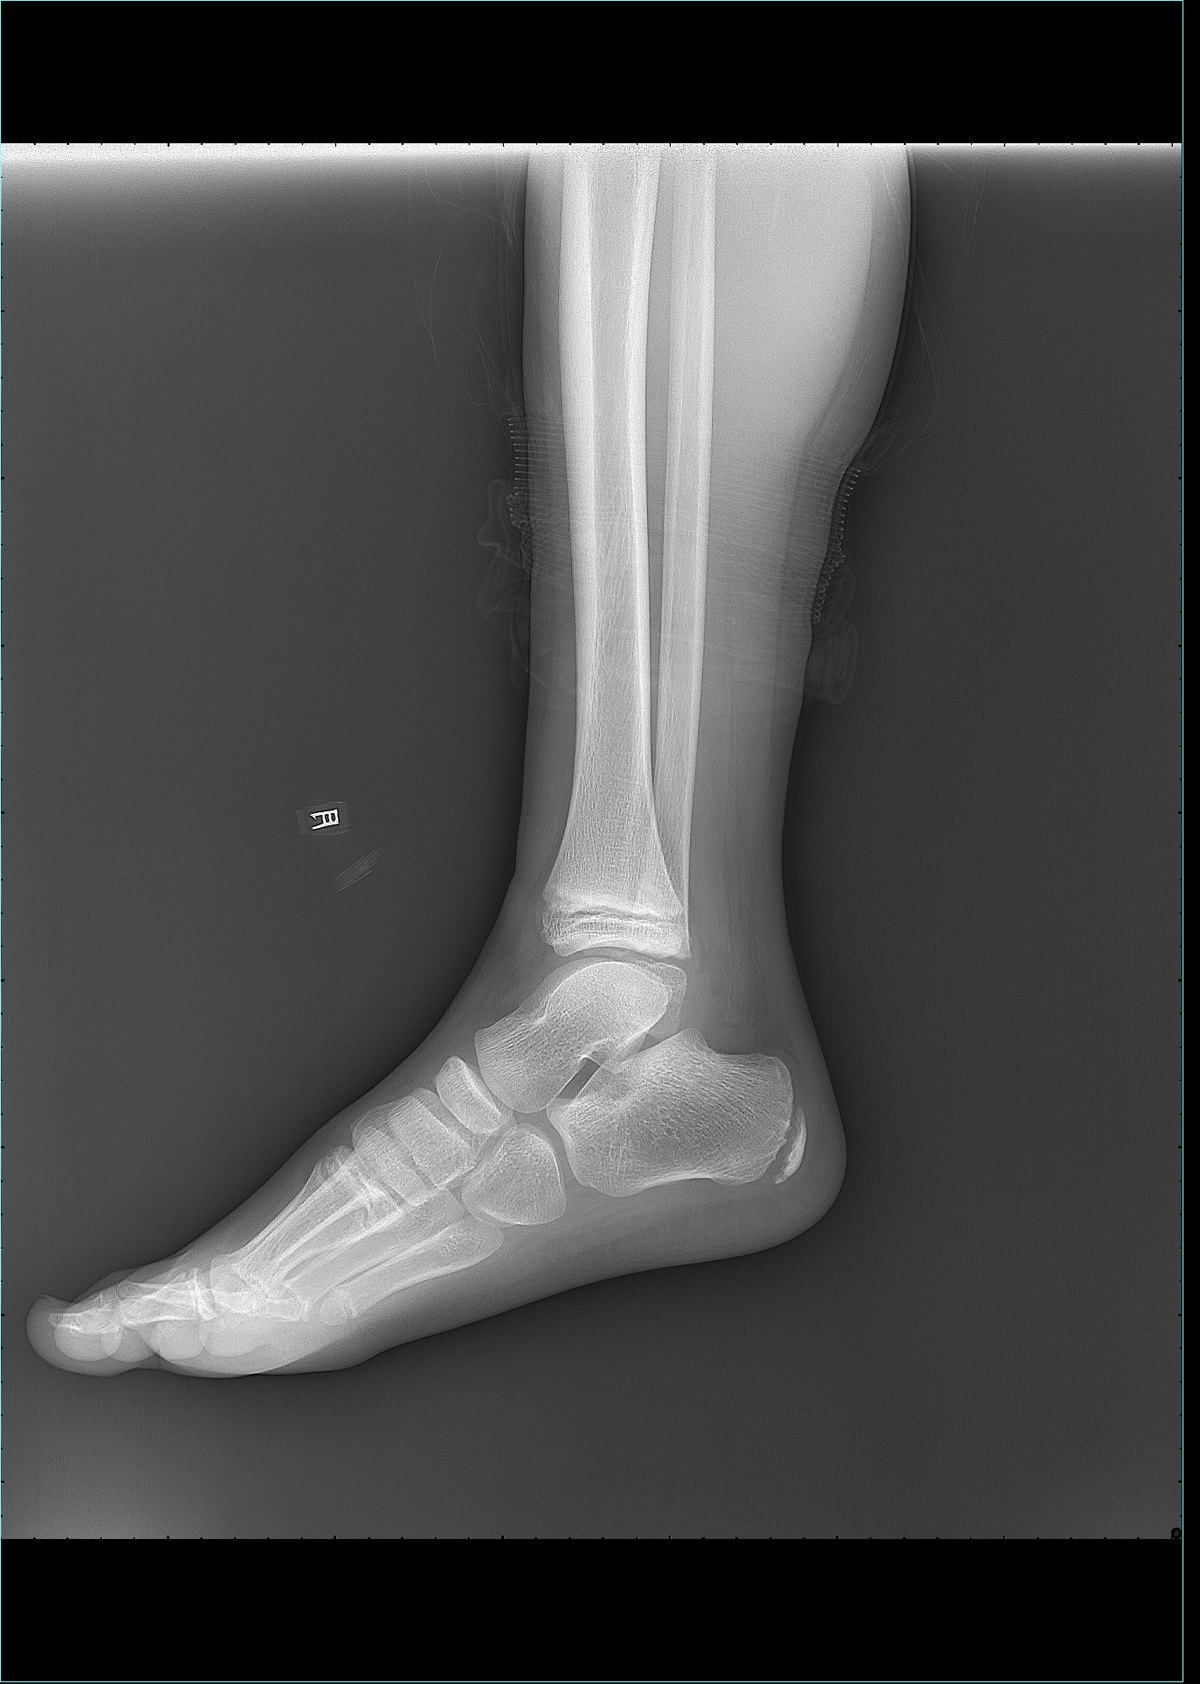 x13707:m-8,右侧踝关节外伤后疼痛半小时余